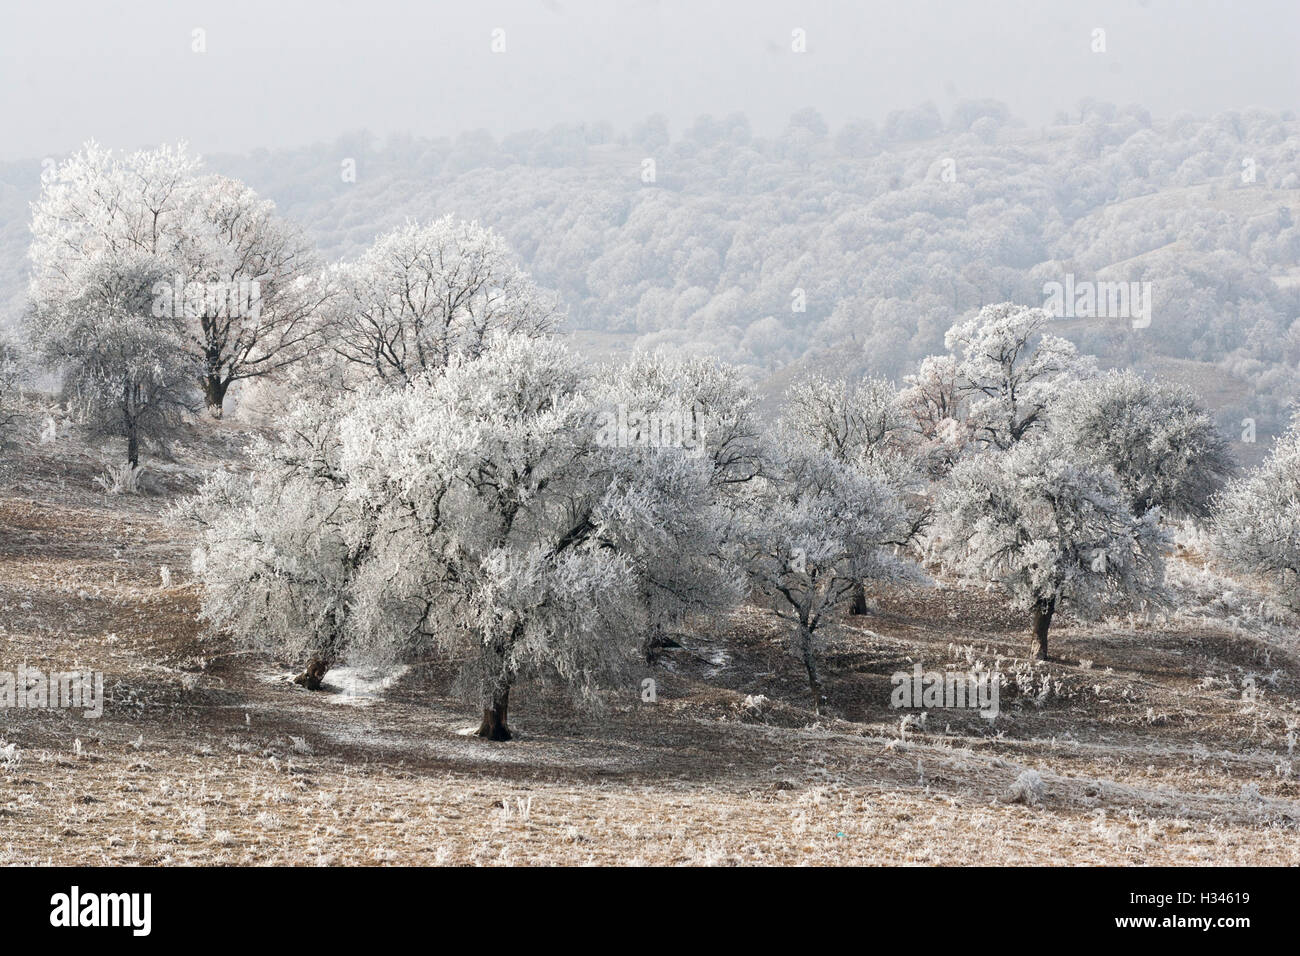 Les plantes et les arbres semblent couverts en rime dans ce paysage à la fin de l'automne dans les collines de Transylvanie. Banque D'Images